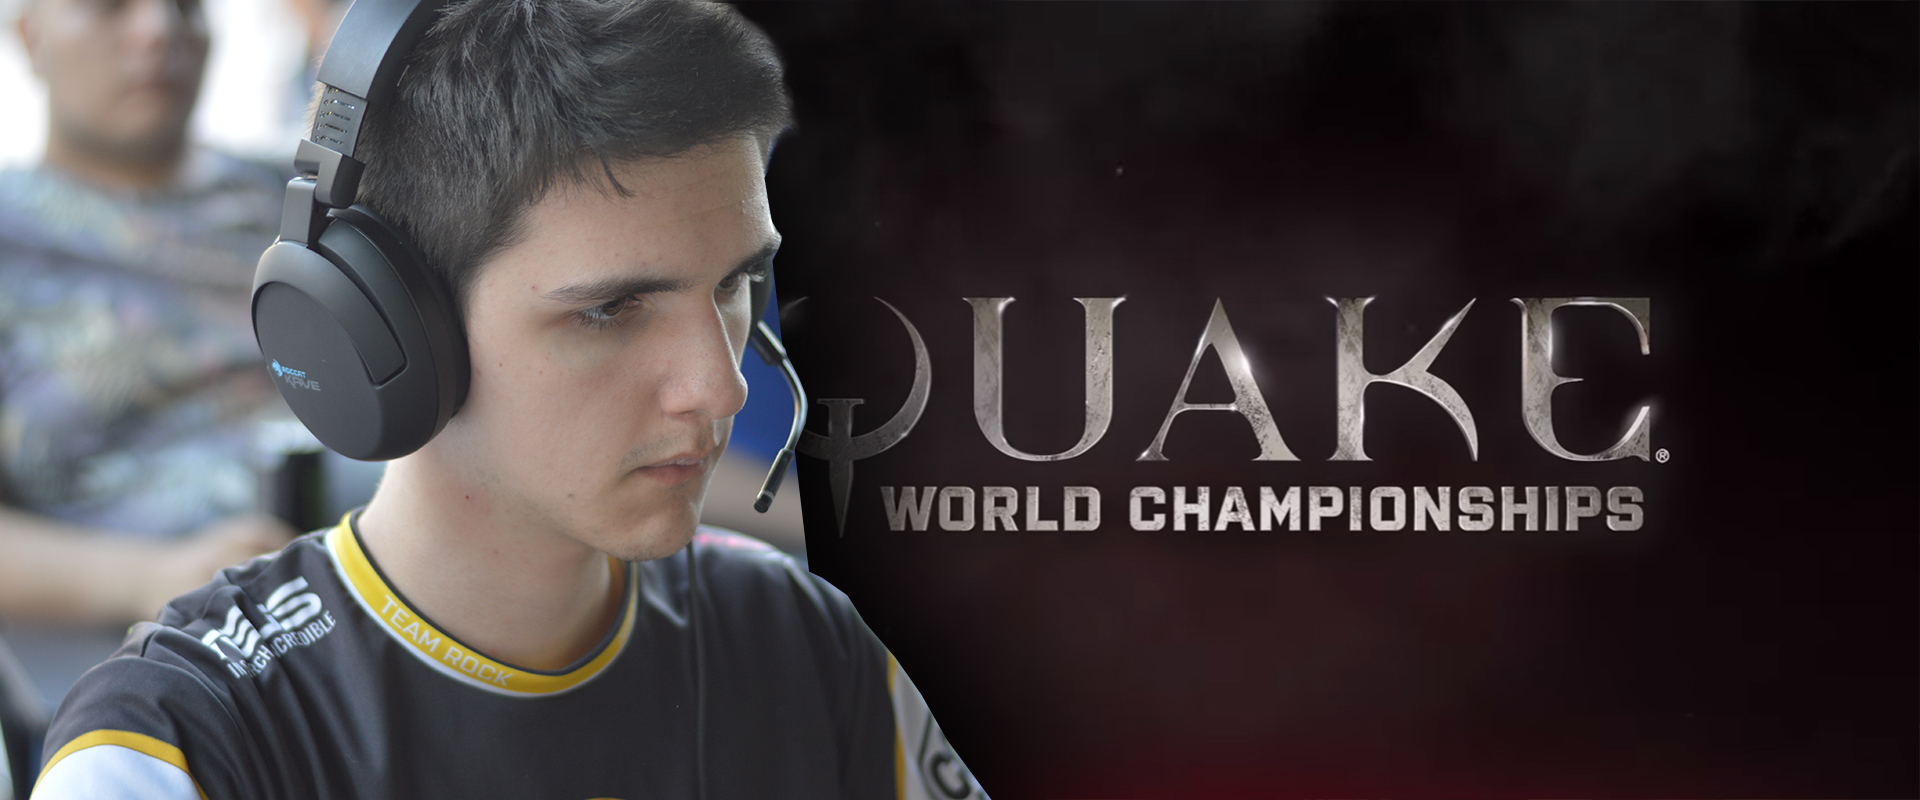 NOFEAR sikerrel vette az első akadályt a Quake világbajnokságon